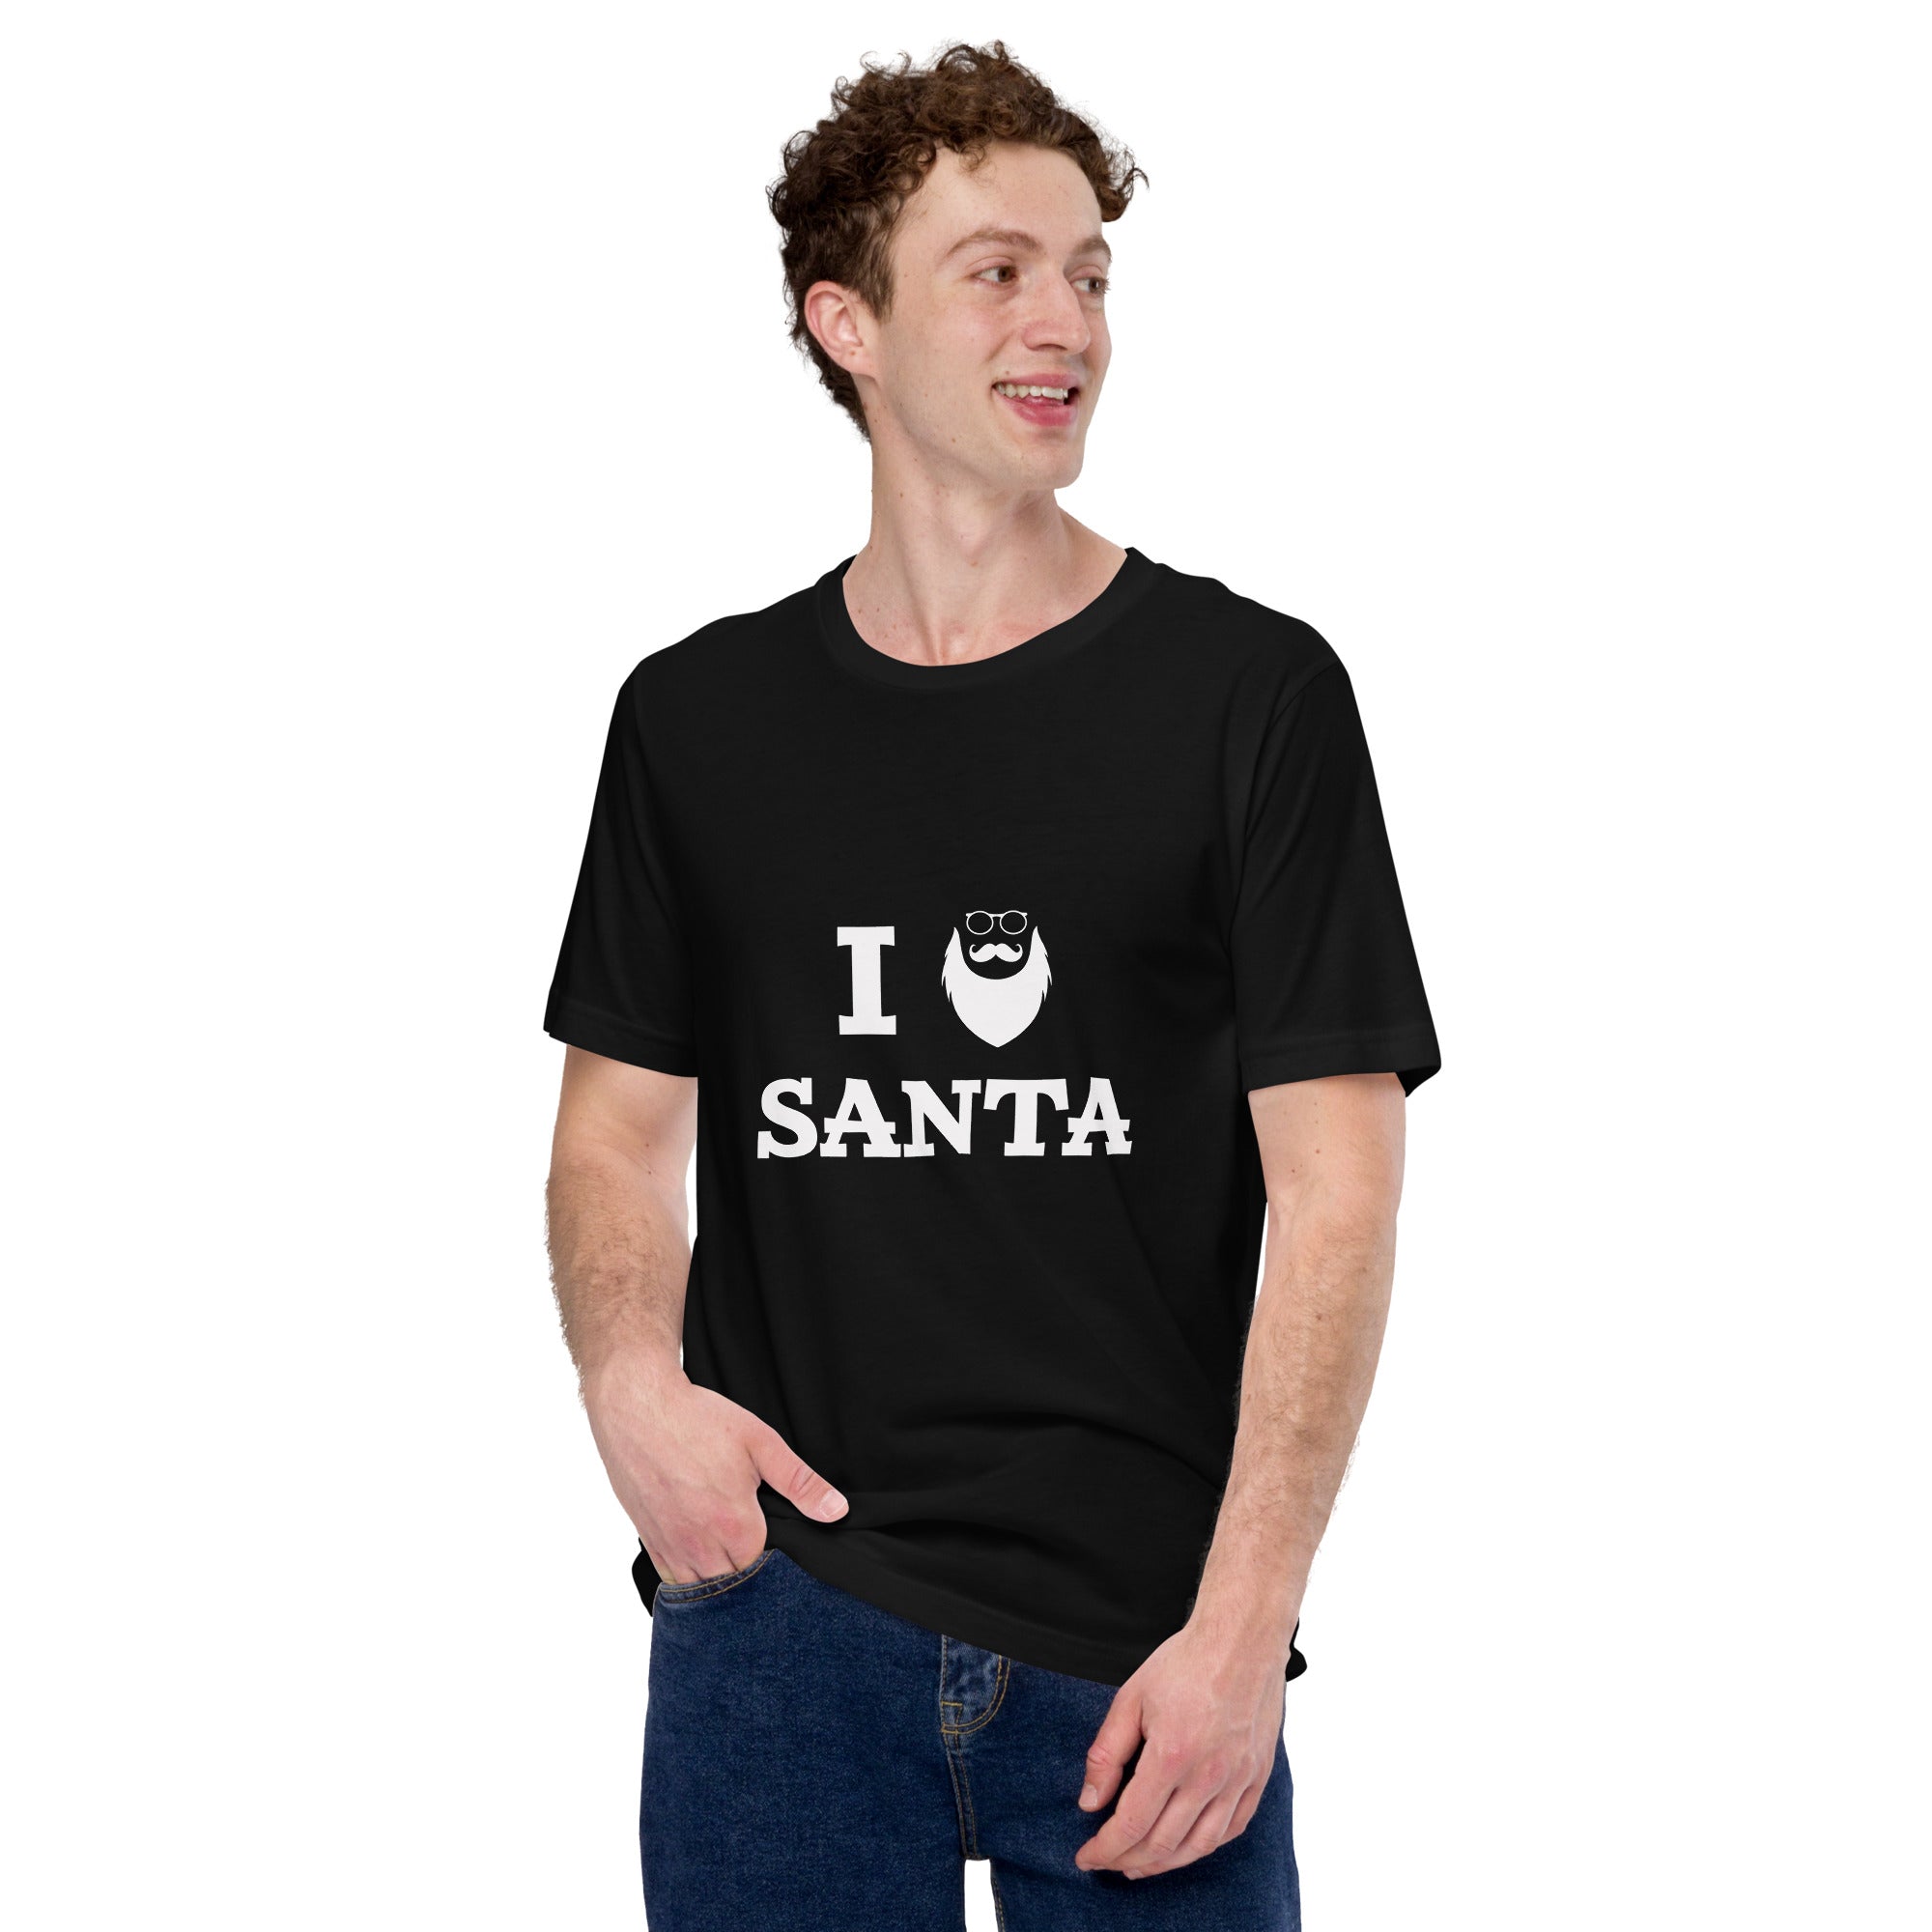 I Santa Unisex t-shirt